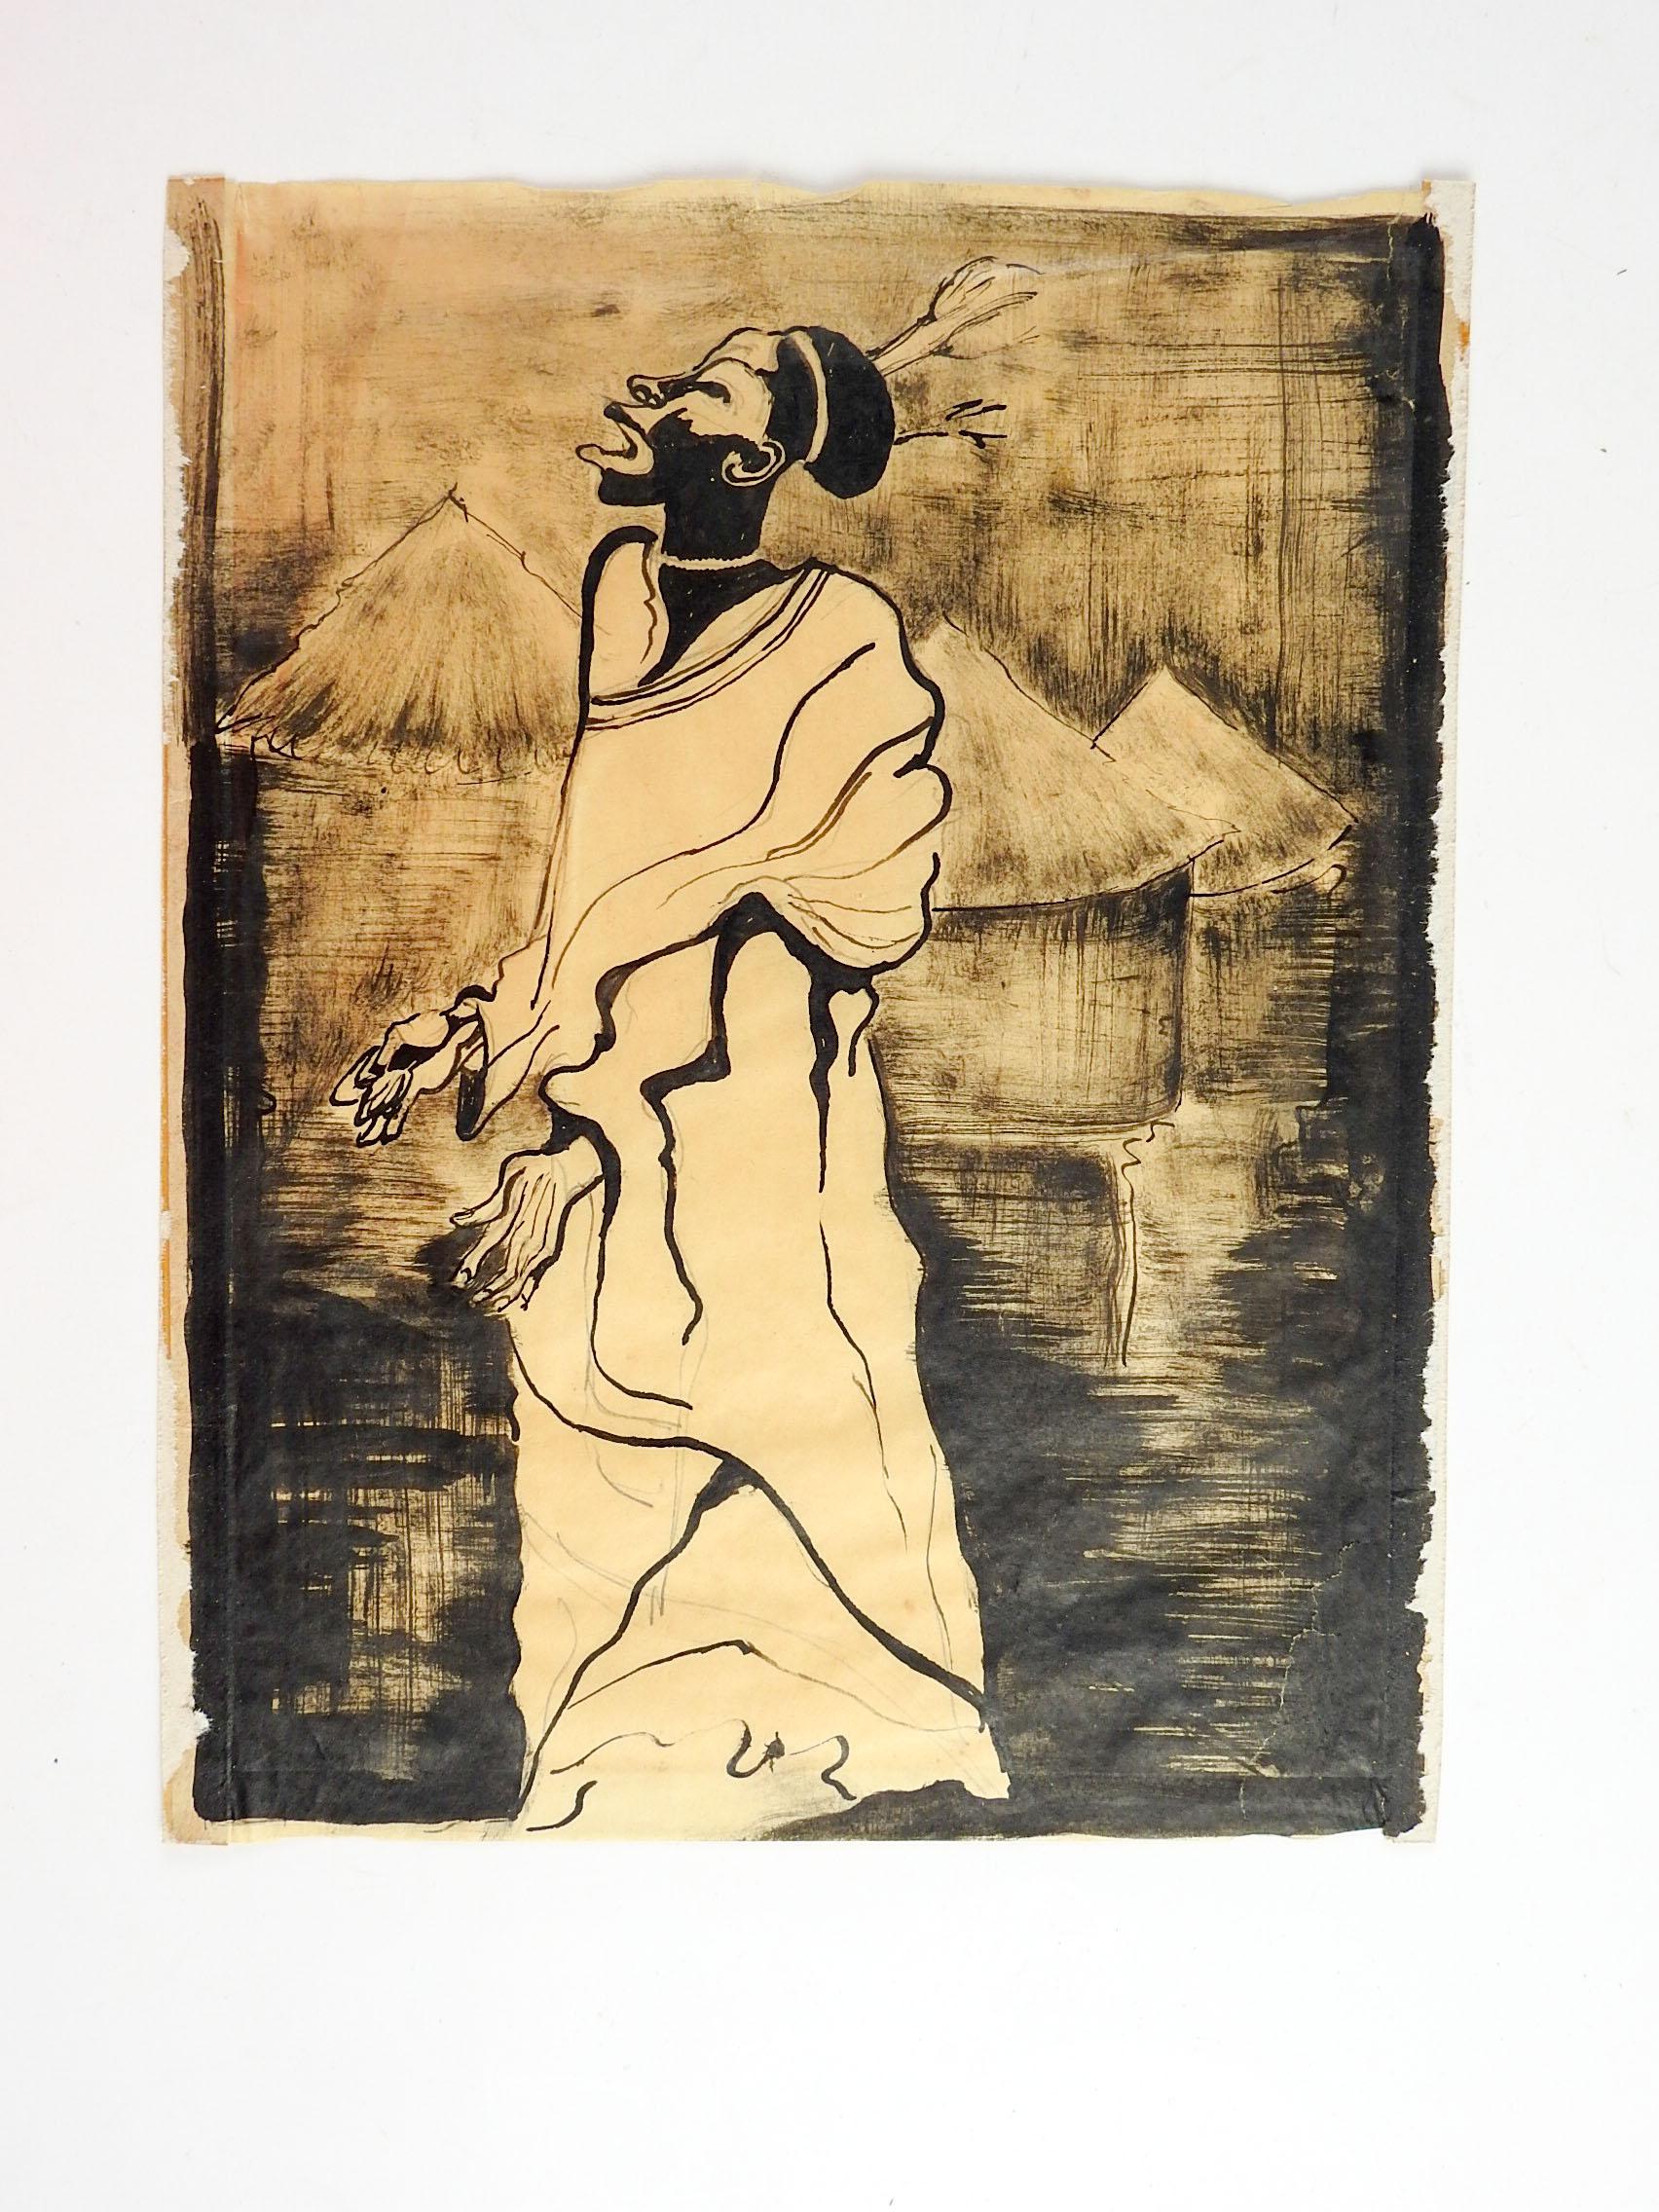 CIRCA 1930's starke Tinte waschen auf dünnem Papier Studie der afrikanischen Mann. Unsigniert, wahrscheinlich von einem afroamerikanischen Künstler ausgeführt, basierend auf den anderen Werken aus dem Nachlass. Alterstönung, Klebebandreste an den